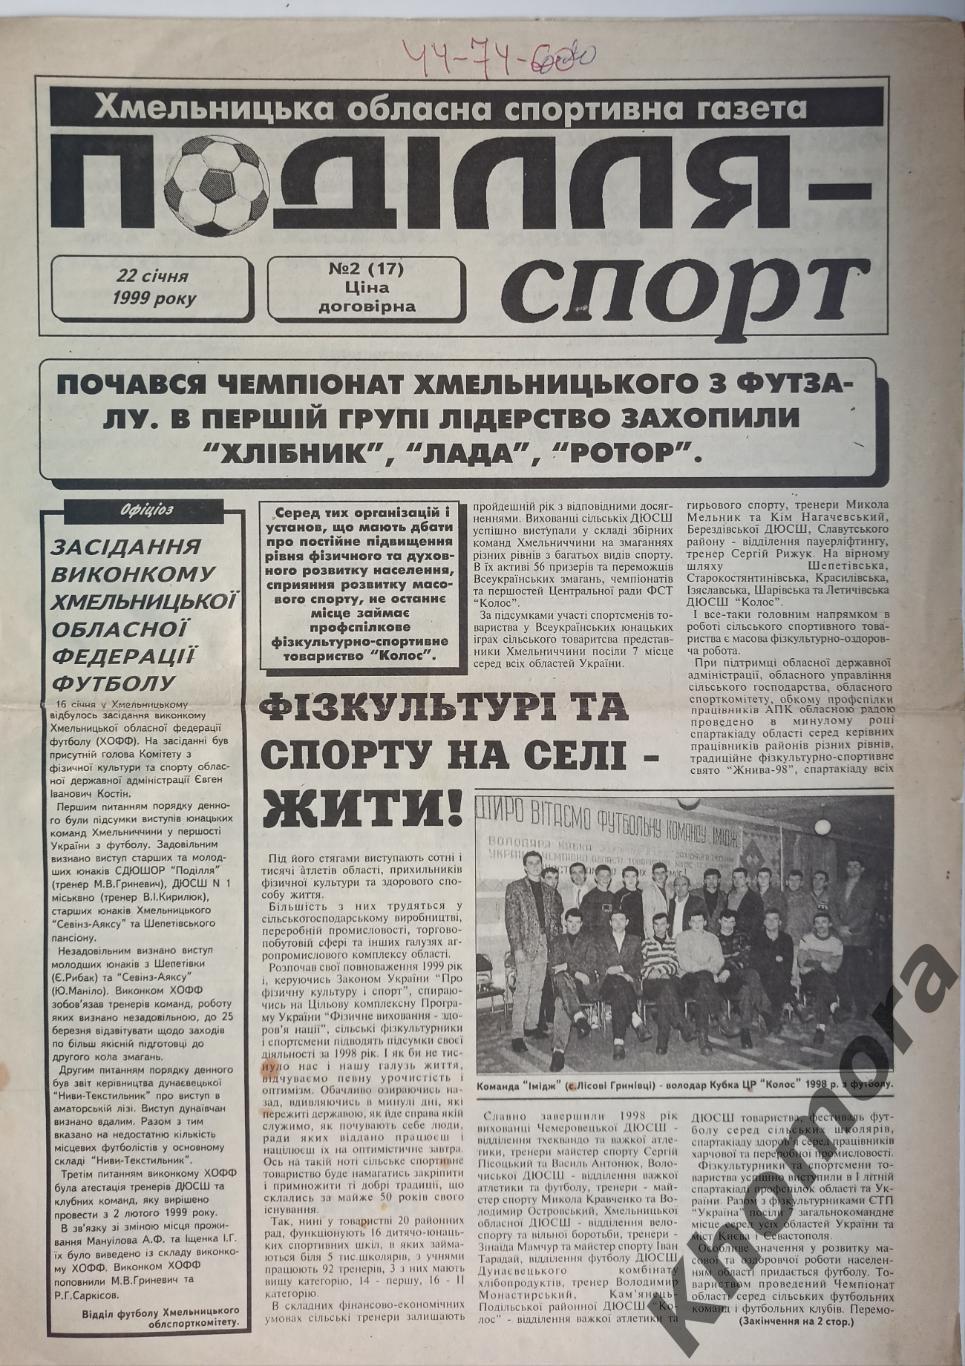 Подолье Спорт (Хмельницкий) #2 от 22 января 1999 года - спортивная газета